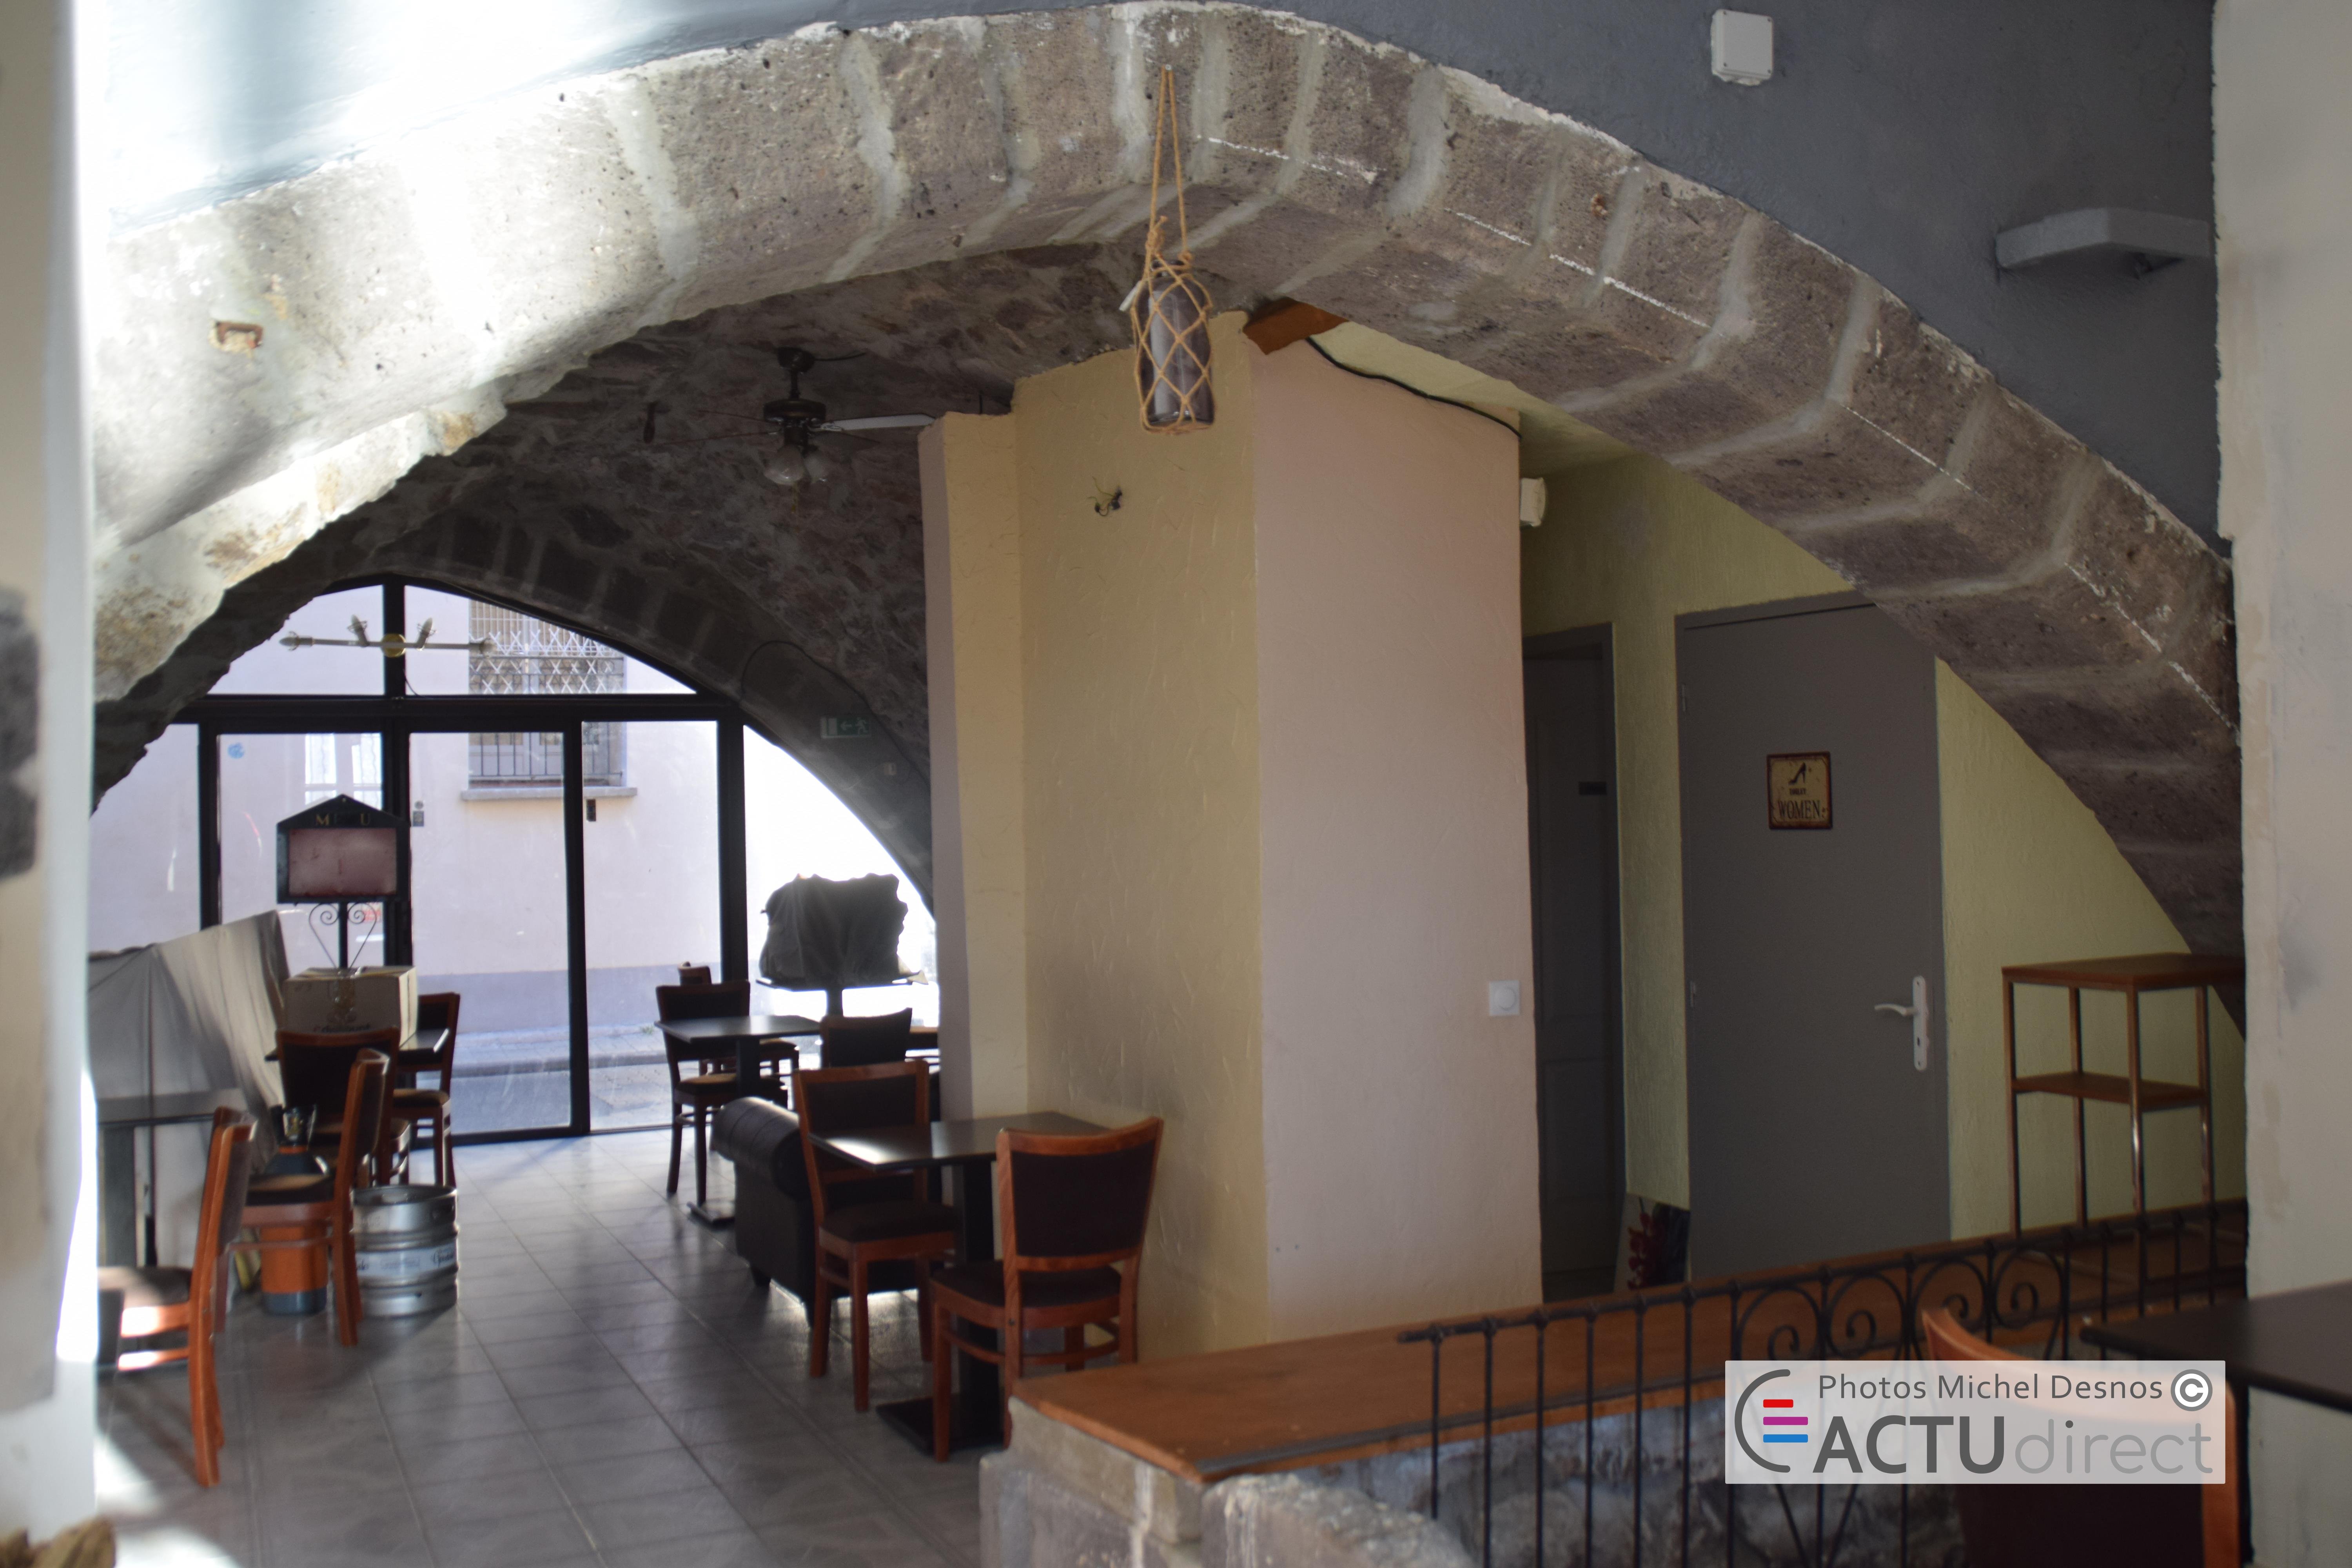 Agde - Un nouveau restaurant unique en Agde qui dispose d'un fumoir de 4 mètres !